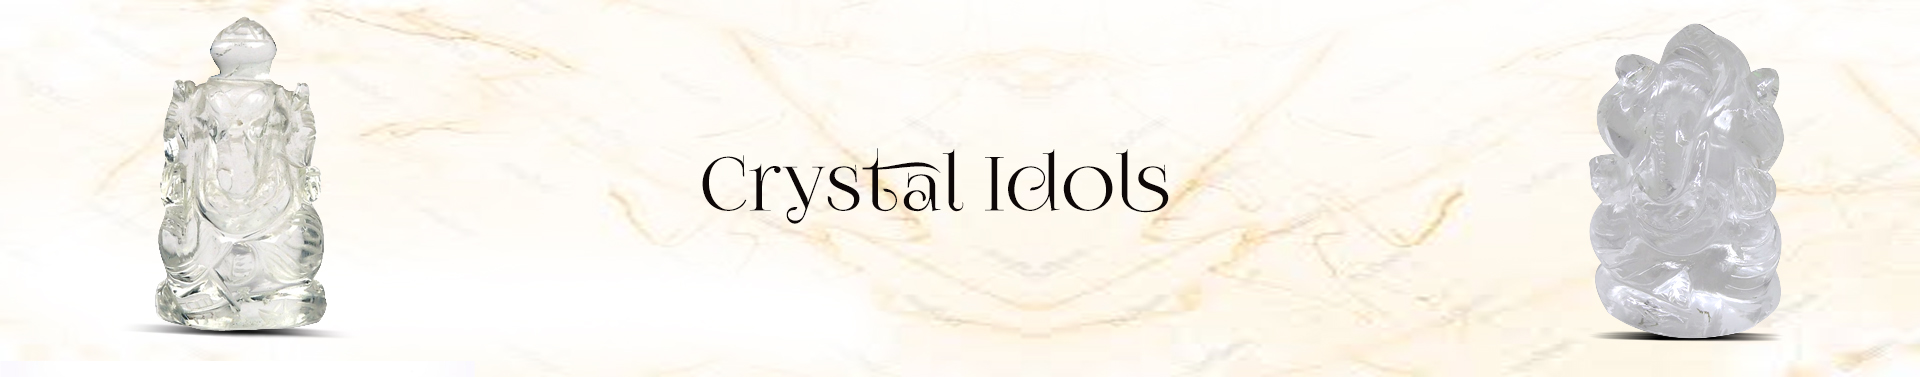 Crystal Idols